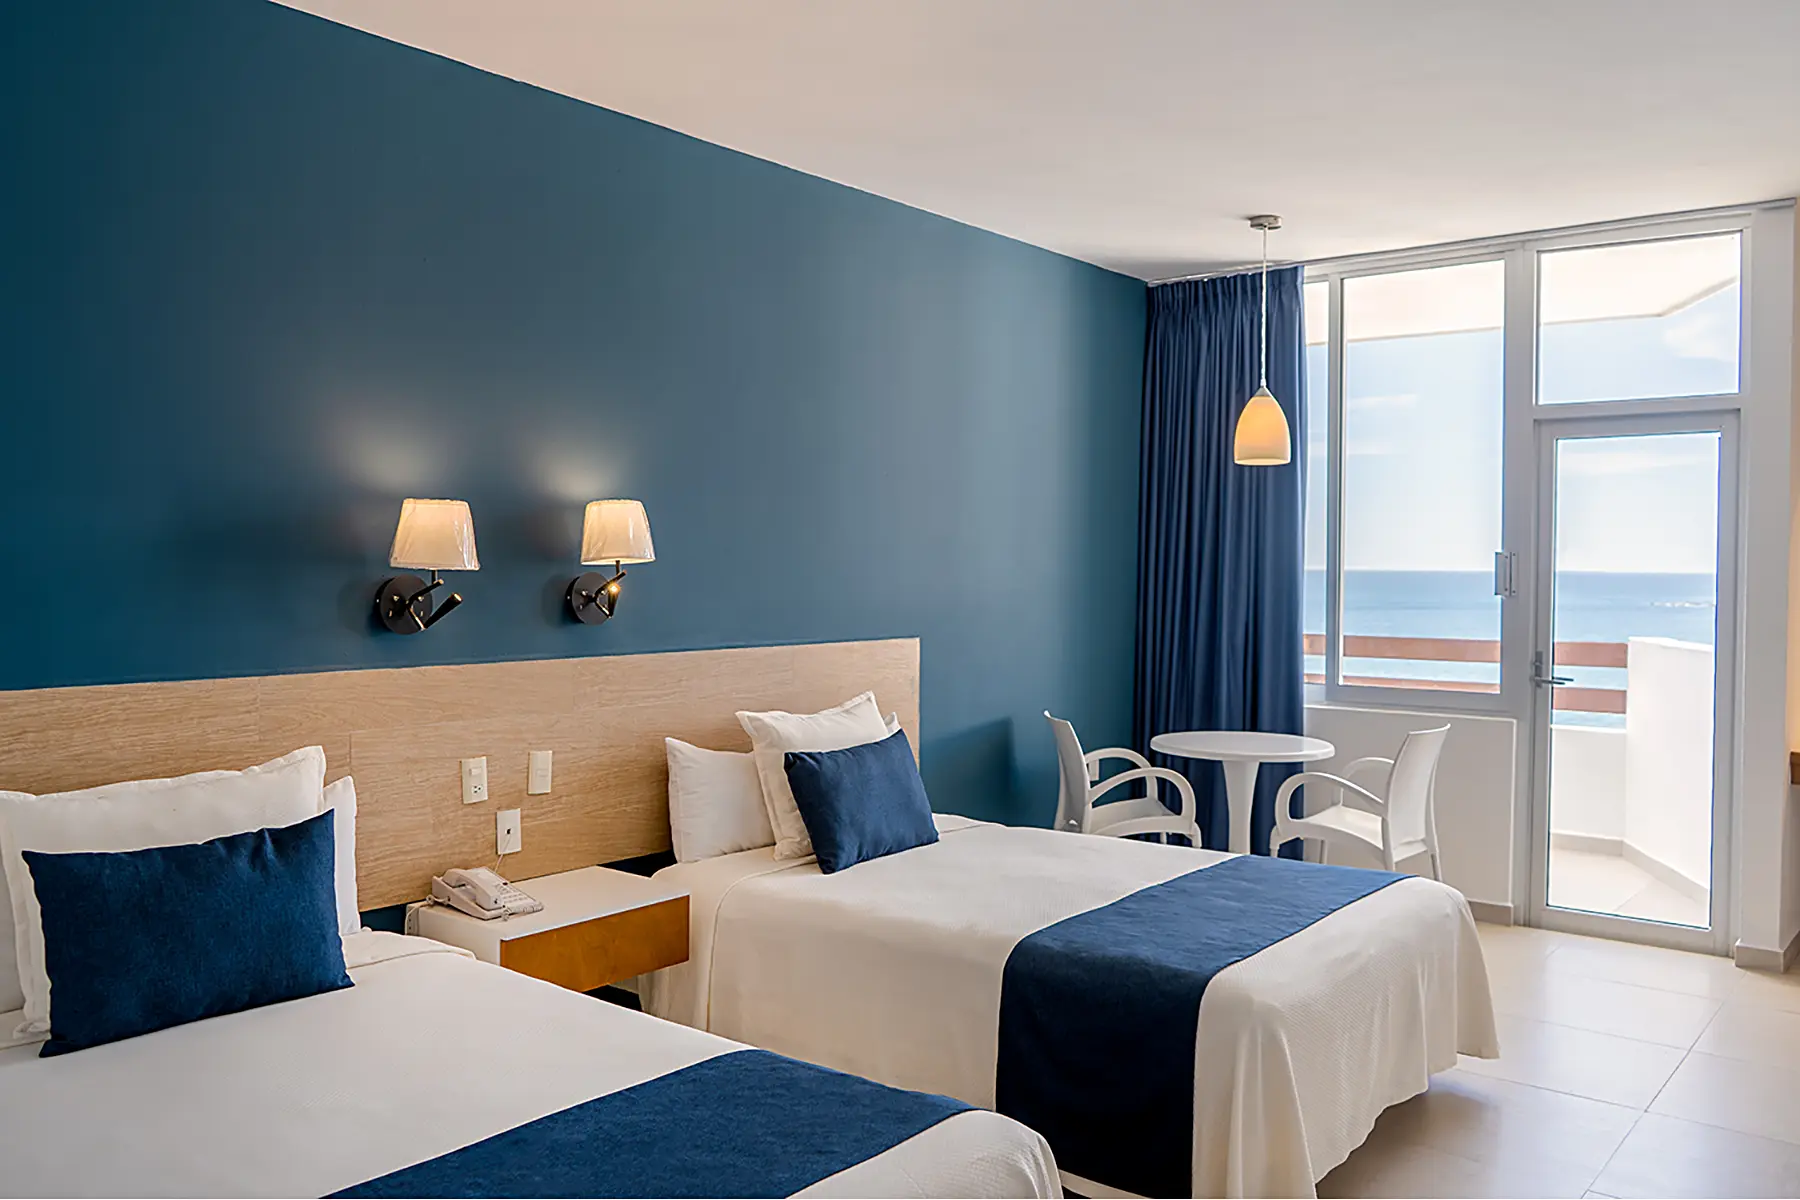 Habitación standar con balcón y vista al mar, dos camas matrimoniales, mesa con dos sillas del hotel oceano palace Mazatlán